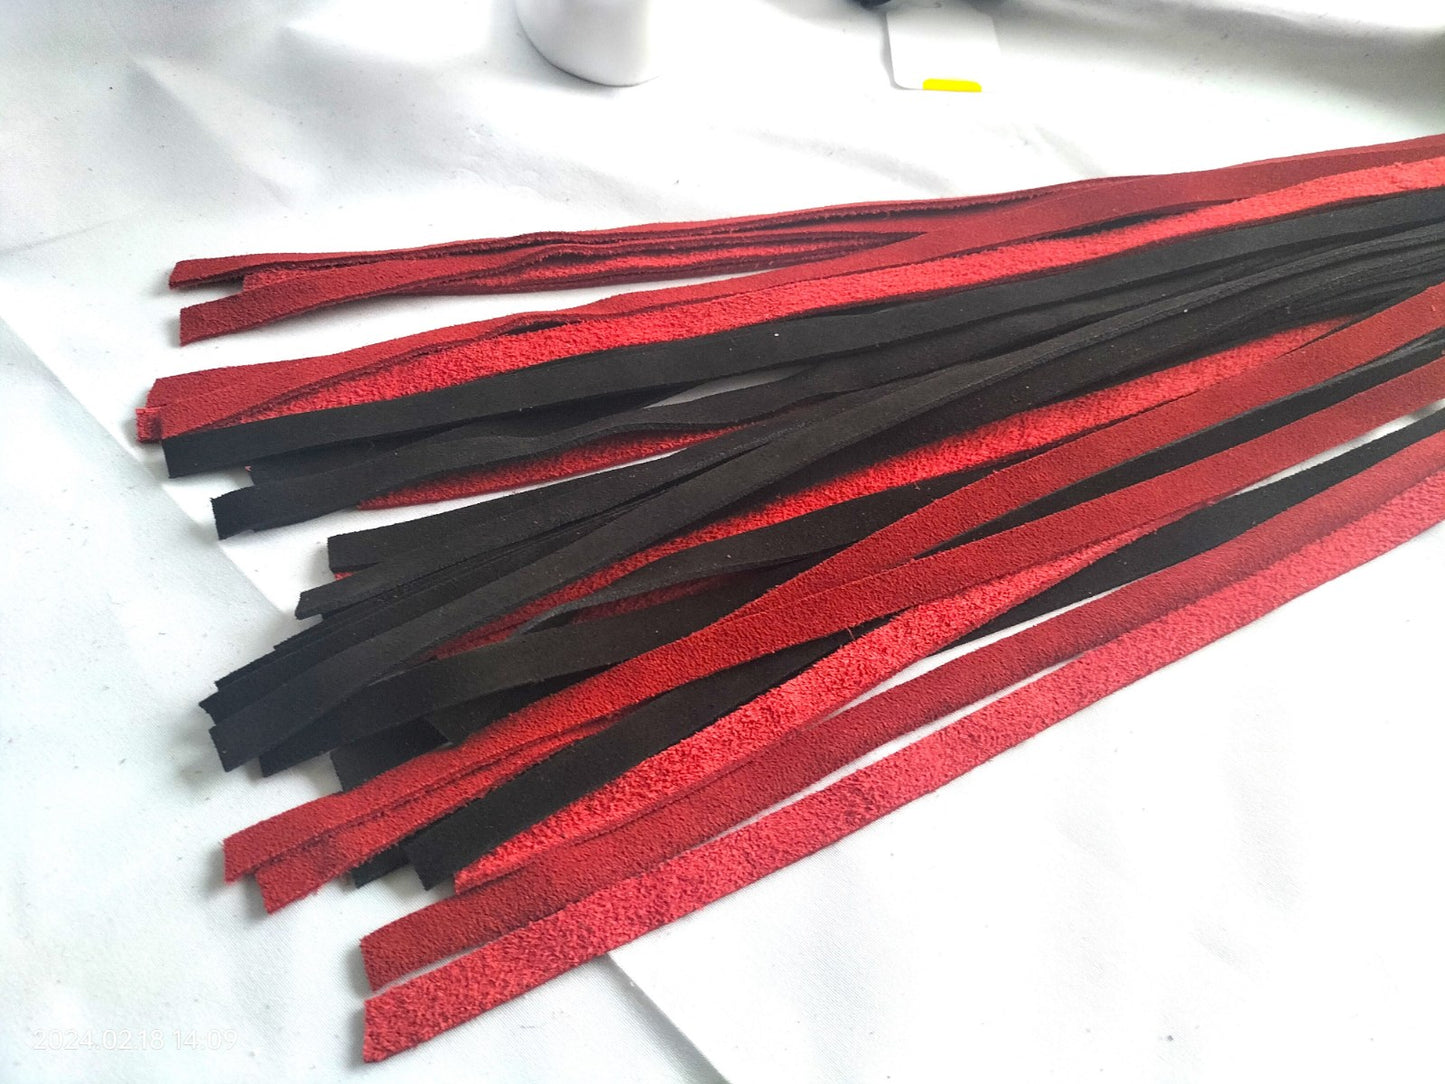 Black/red suede flogger